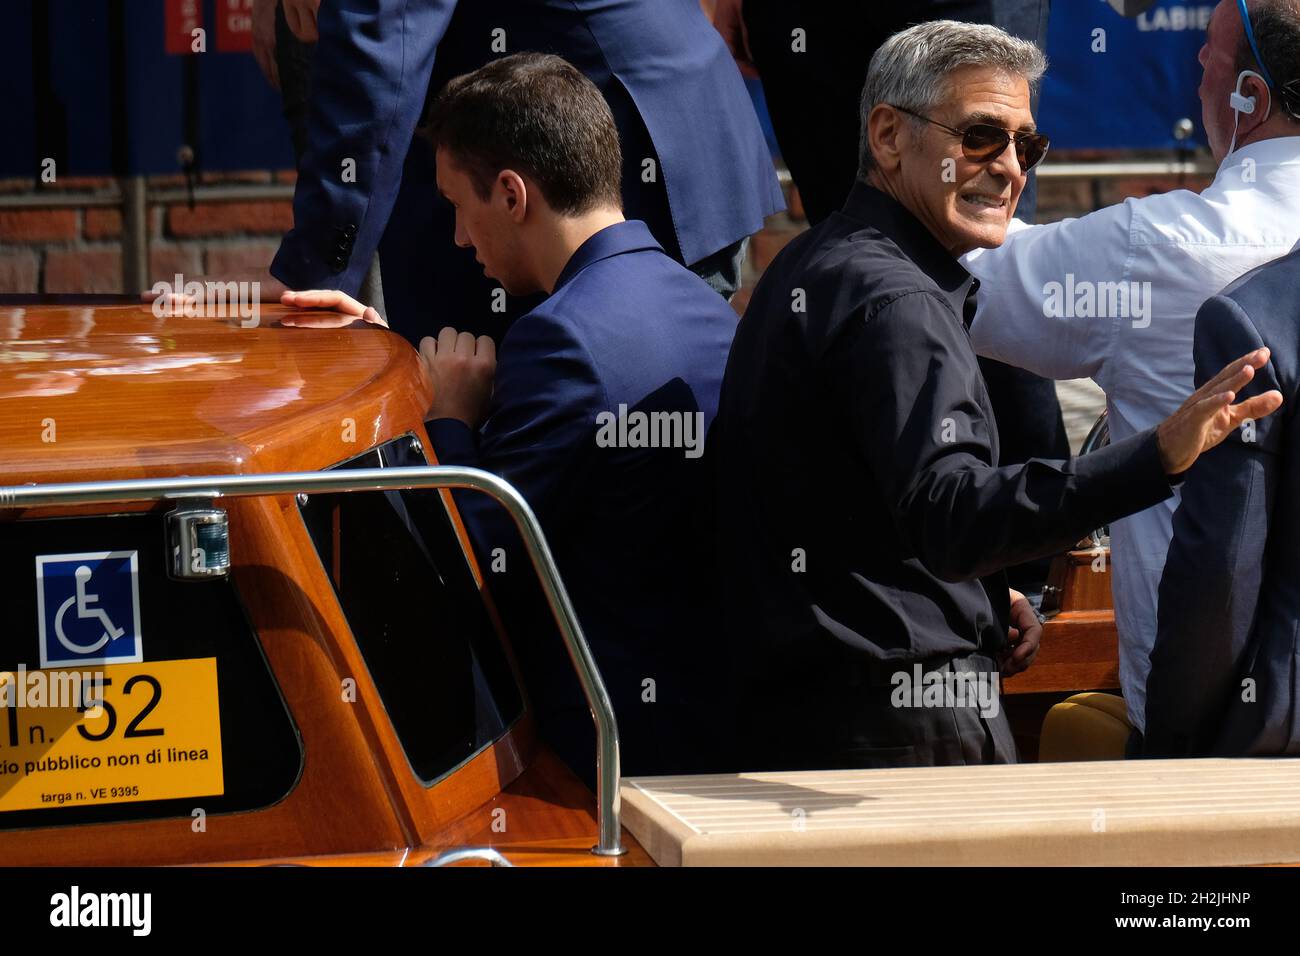 El actor George Clooney llega al Festival de Cine de Venecia 74th en Venecia, Italia, el 30 de agosto de 2017. (MVS) Foto de stock